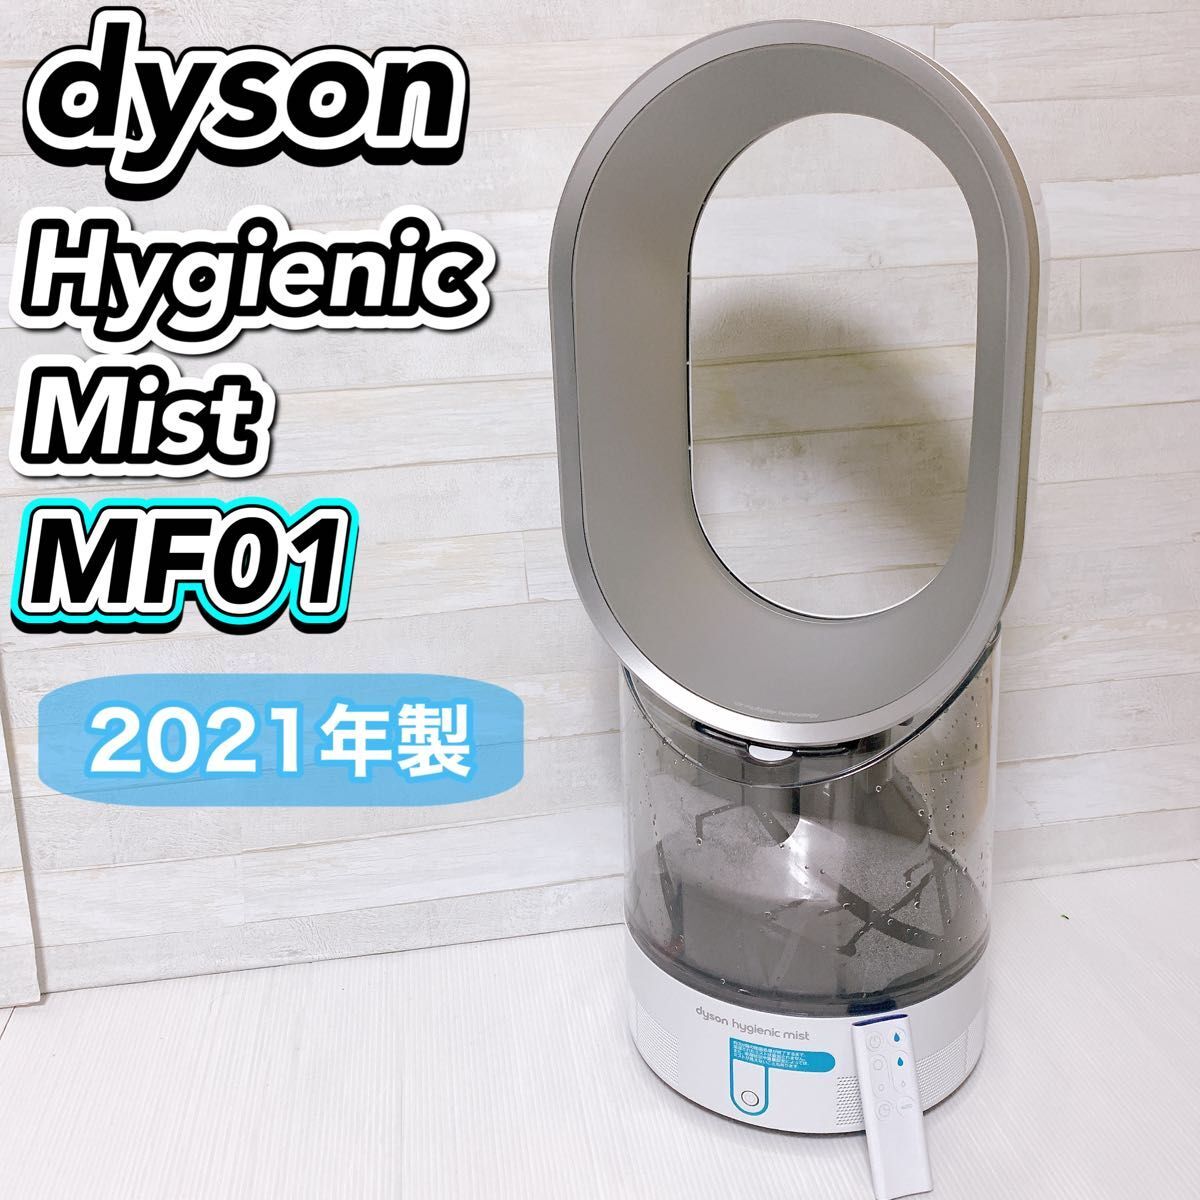 【美品】Dyson hygienic Mist MF01 加湿器 扇風機 2021年製 ダイソン ハイジェニックミスト